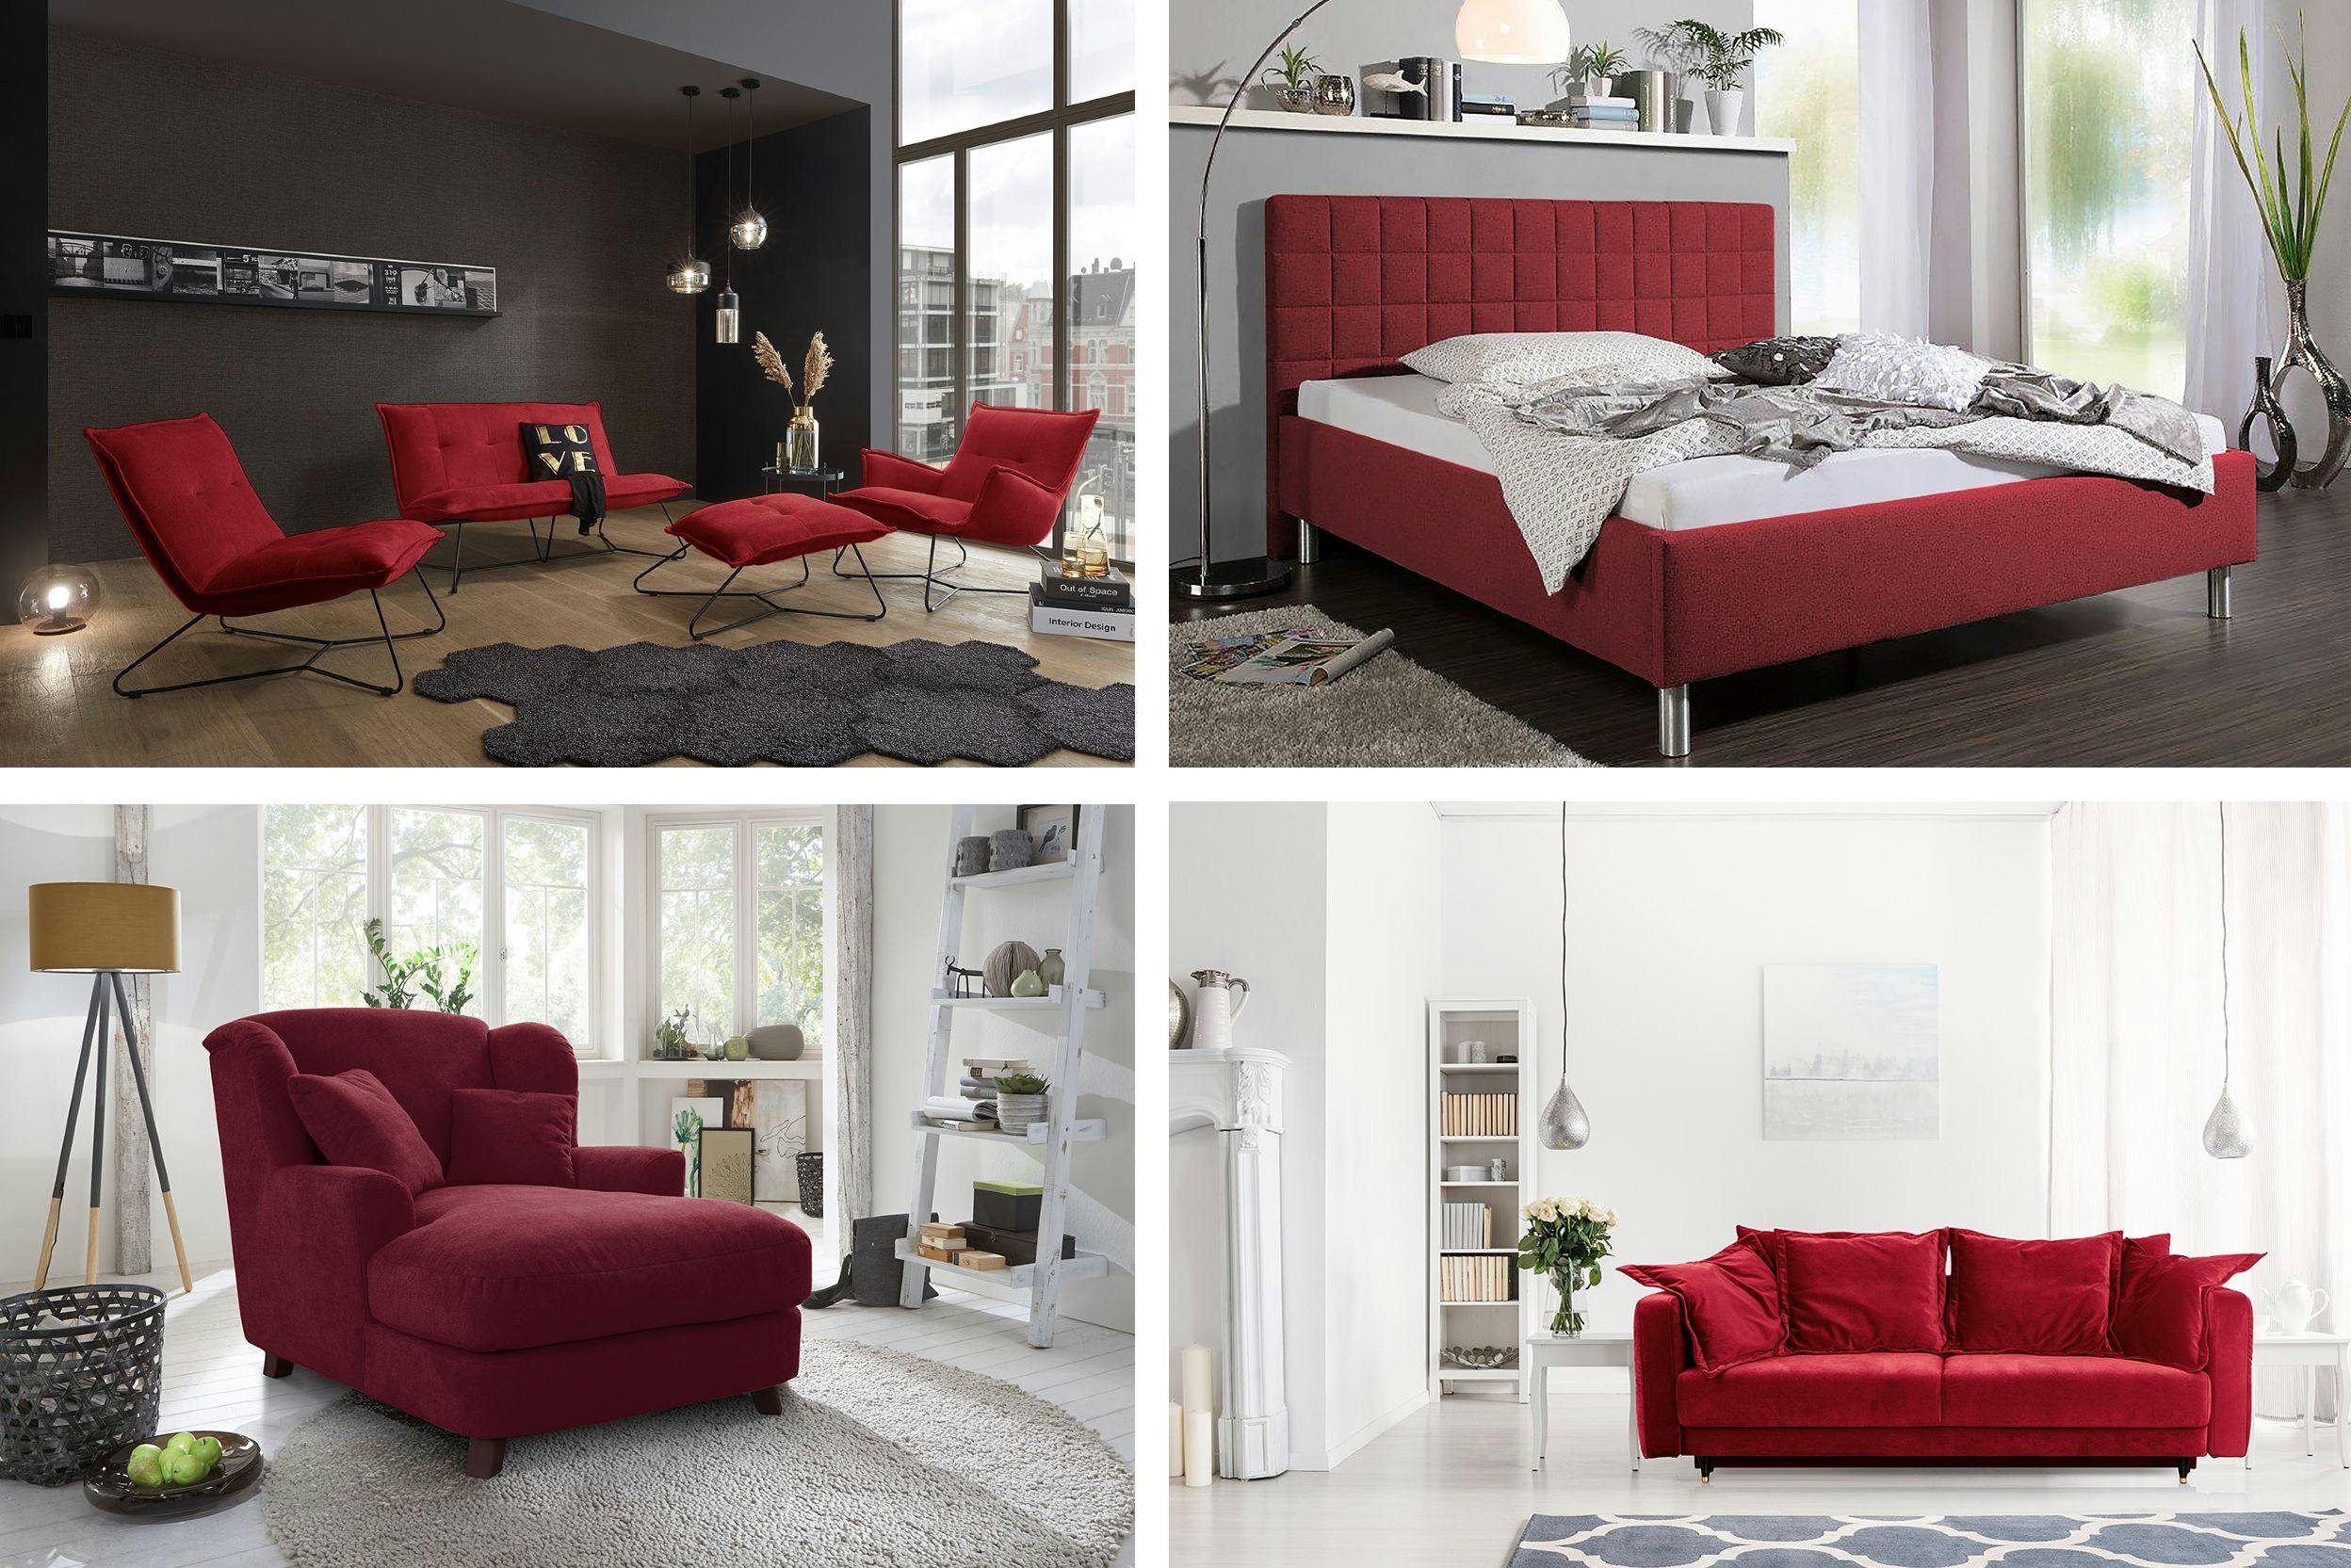 Quatre photos de pièces différentes avec dans chacune un ou plusieurs meubles de couleur magenta, comme un lit, un fauteuil, un canapé ou plusieurs sièges